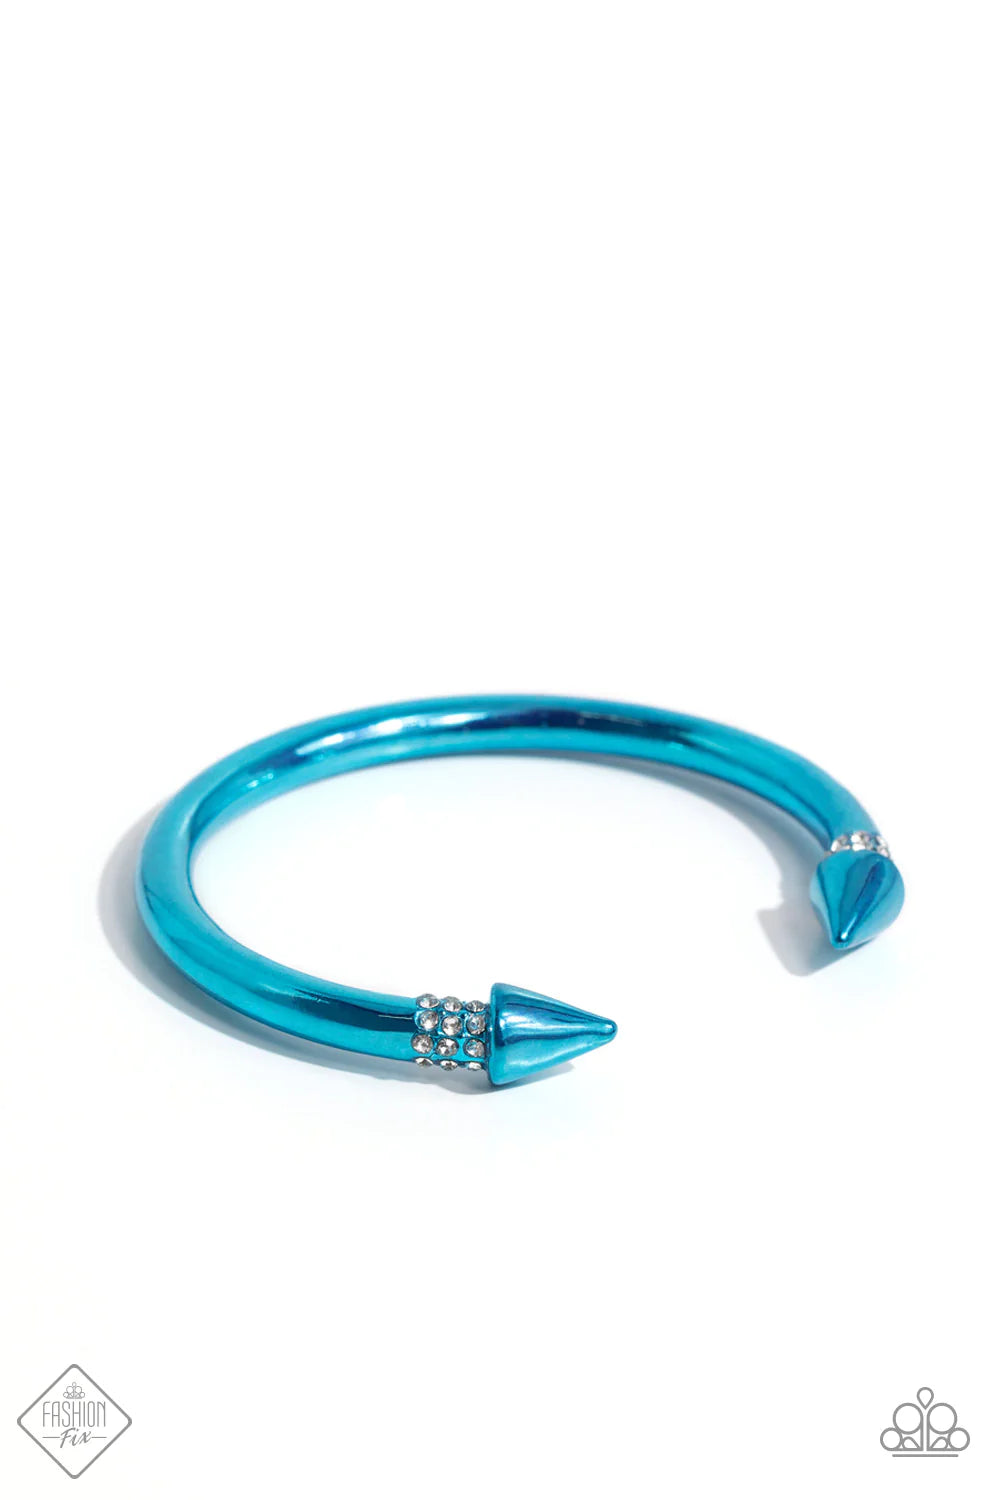 Punky Plot Twist - Blue Bracelet (MM-1223)